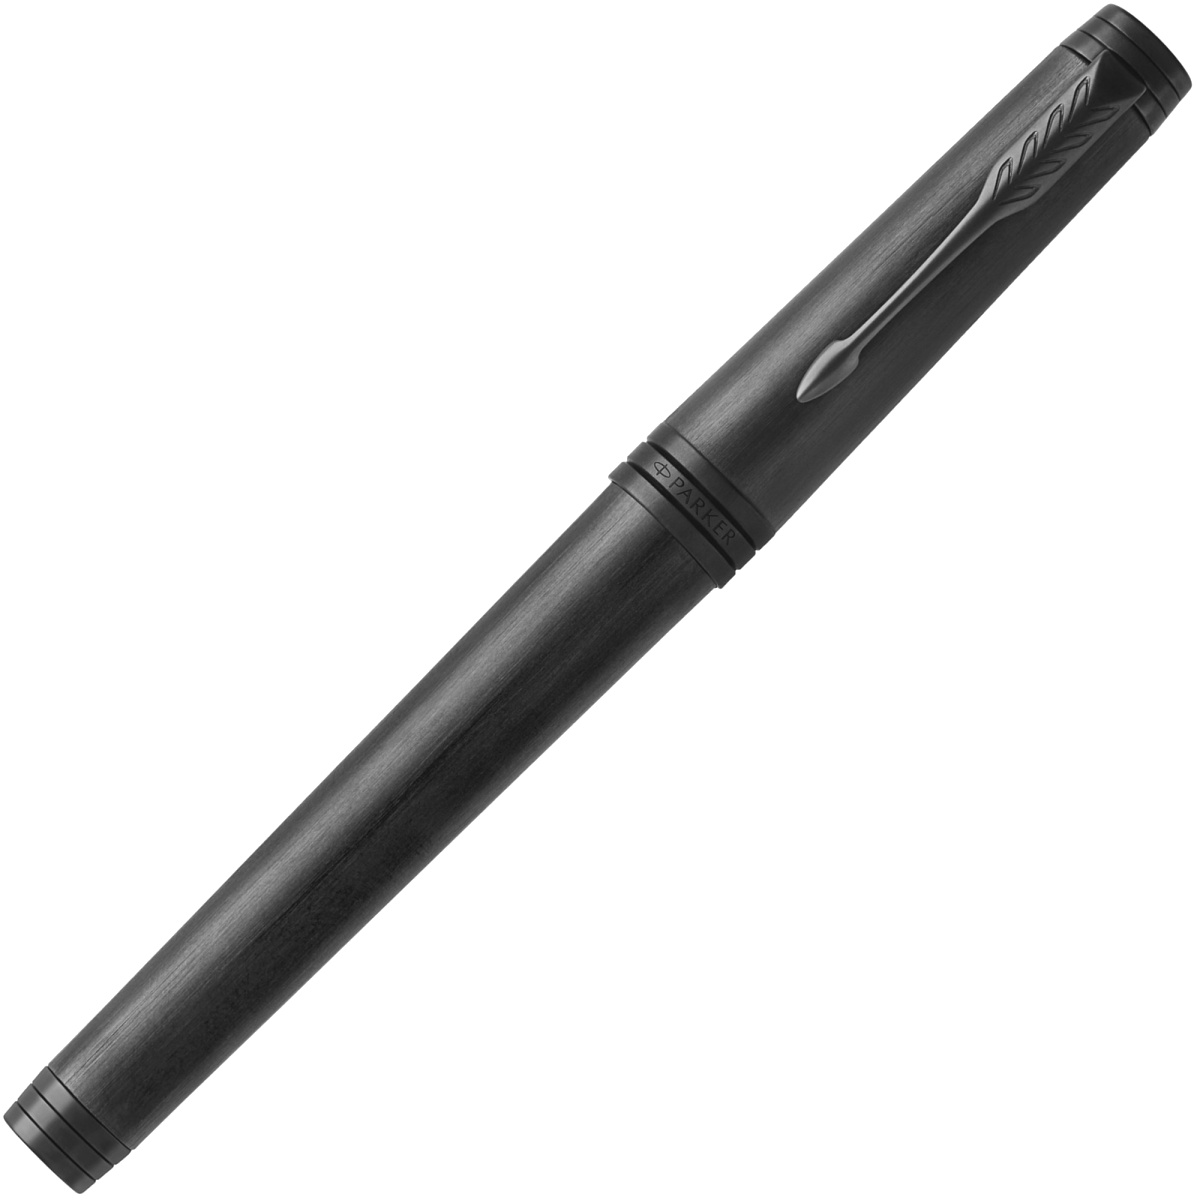  Перьевая ручка Parker Premier Monochrome Black F564, Black PVD (Перо F), фото 2